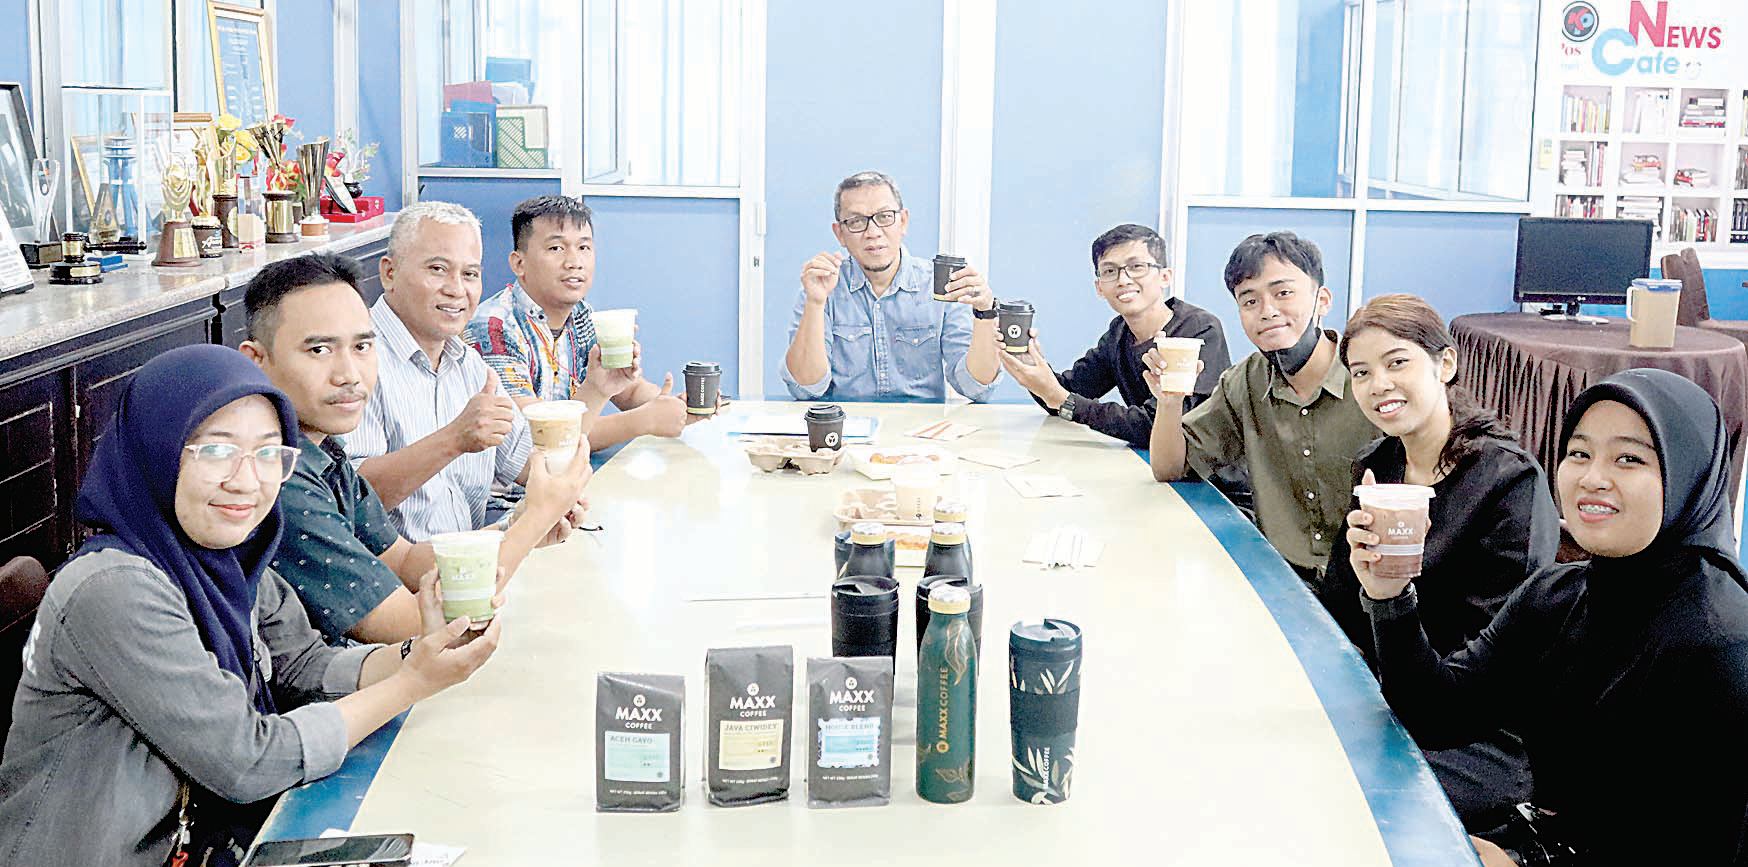 KOPI : Direktur Kendari Pos Irwan Zainuddin (tengah), Supevisior Maxx Coffee Ikhsan (empat dari kanan) foto bersama di tengah diskusi santai, di Graha Pena Kendari Pos, Kamis (7/9). (MUHAMMAD ABDI ASMAUL AMRIN/KENDARI POS)